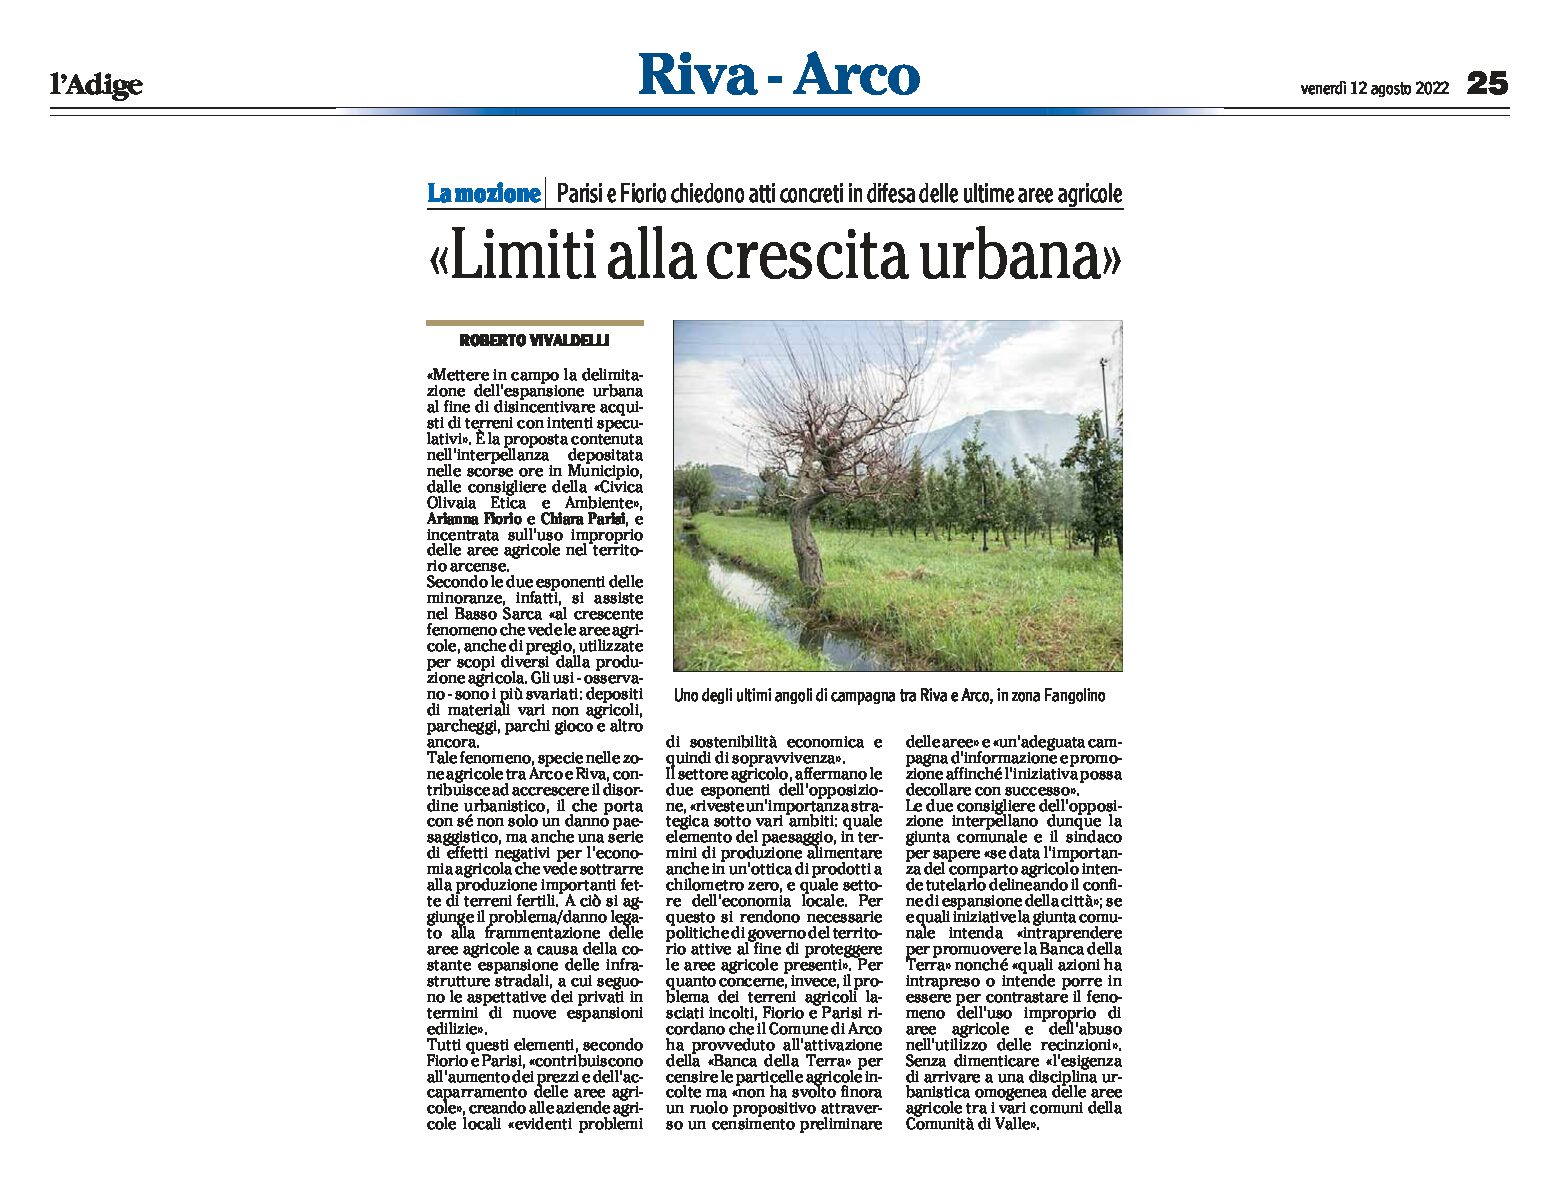 Arco e Riva: Civica Olivaia chiede “limiti alla crescita urbana” in difesa delle ultime aree agricole